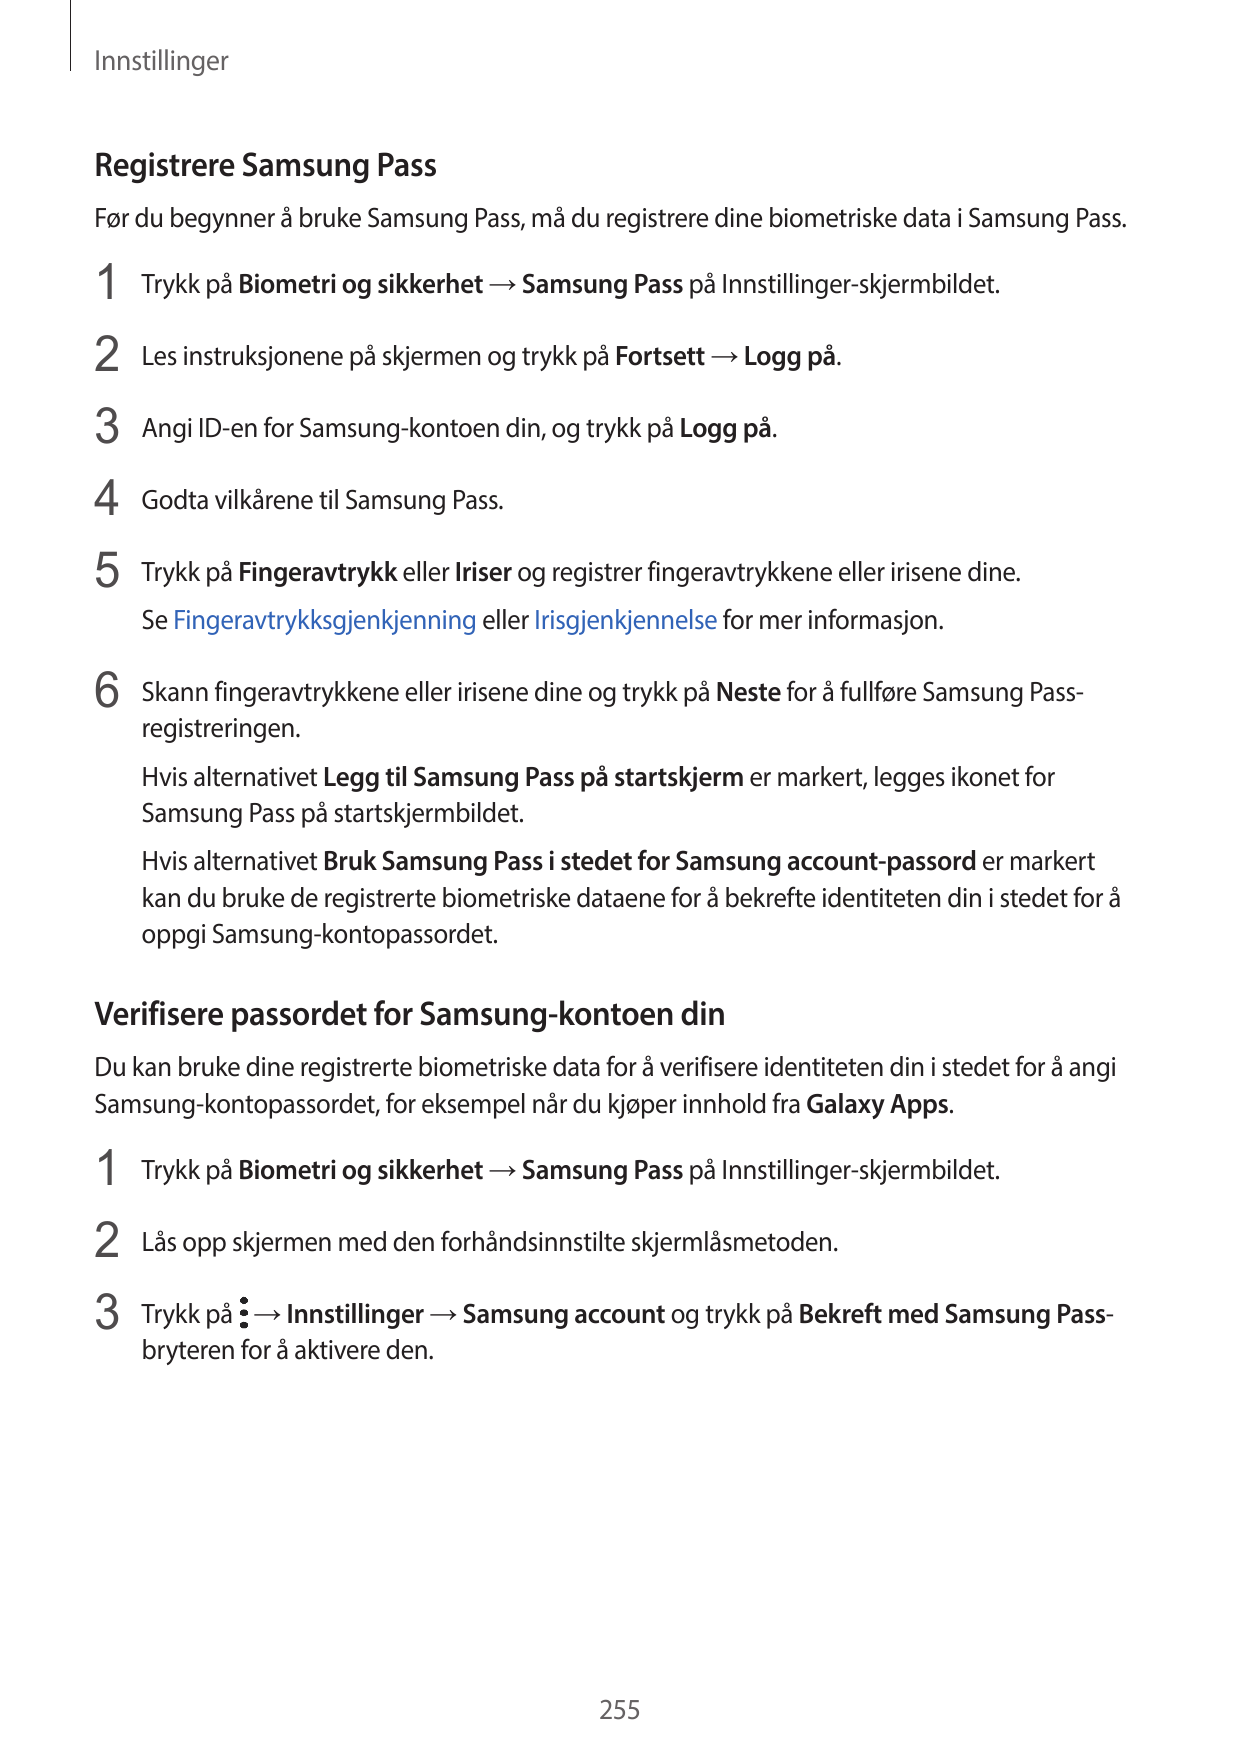 InnstillingerRegistrere Samsung PassFør du begynner å bruke Samsung Pass, må du registrere dine biometriske data i Samsung Pass.